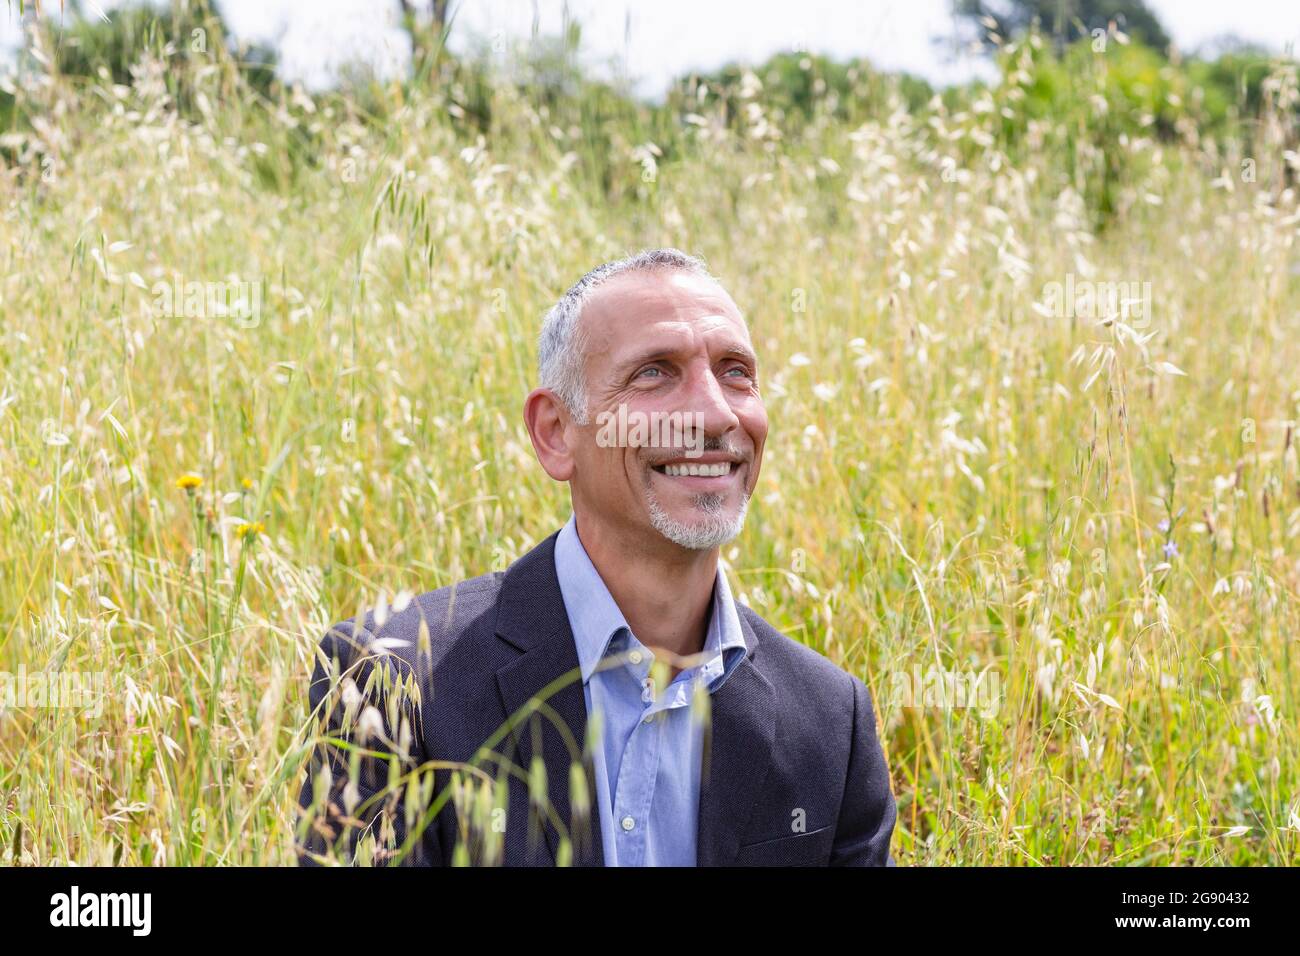 Professionnel souriant, homme d'affaires, qui regarde loin tout en étant assis dans un champ herbacé Banque D'Images